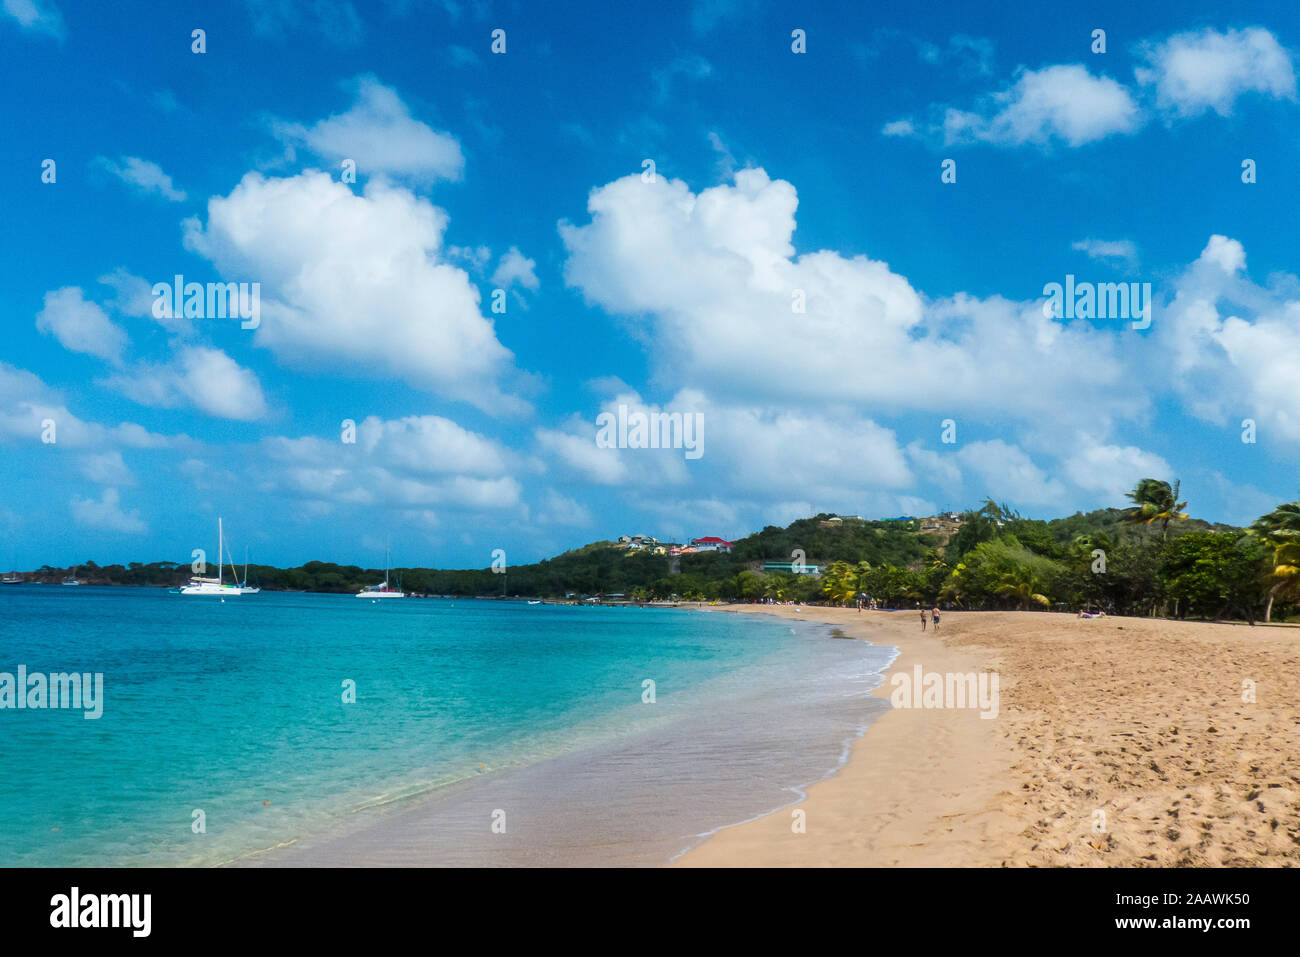 Vista panorámica de la playa de arena contra el cielo en Salt Whistle Bay, Mayreau, Granadinas, San Vicente y las Granadinas, el Caribe Foto de stock